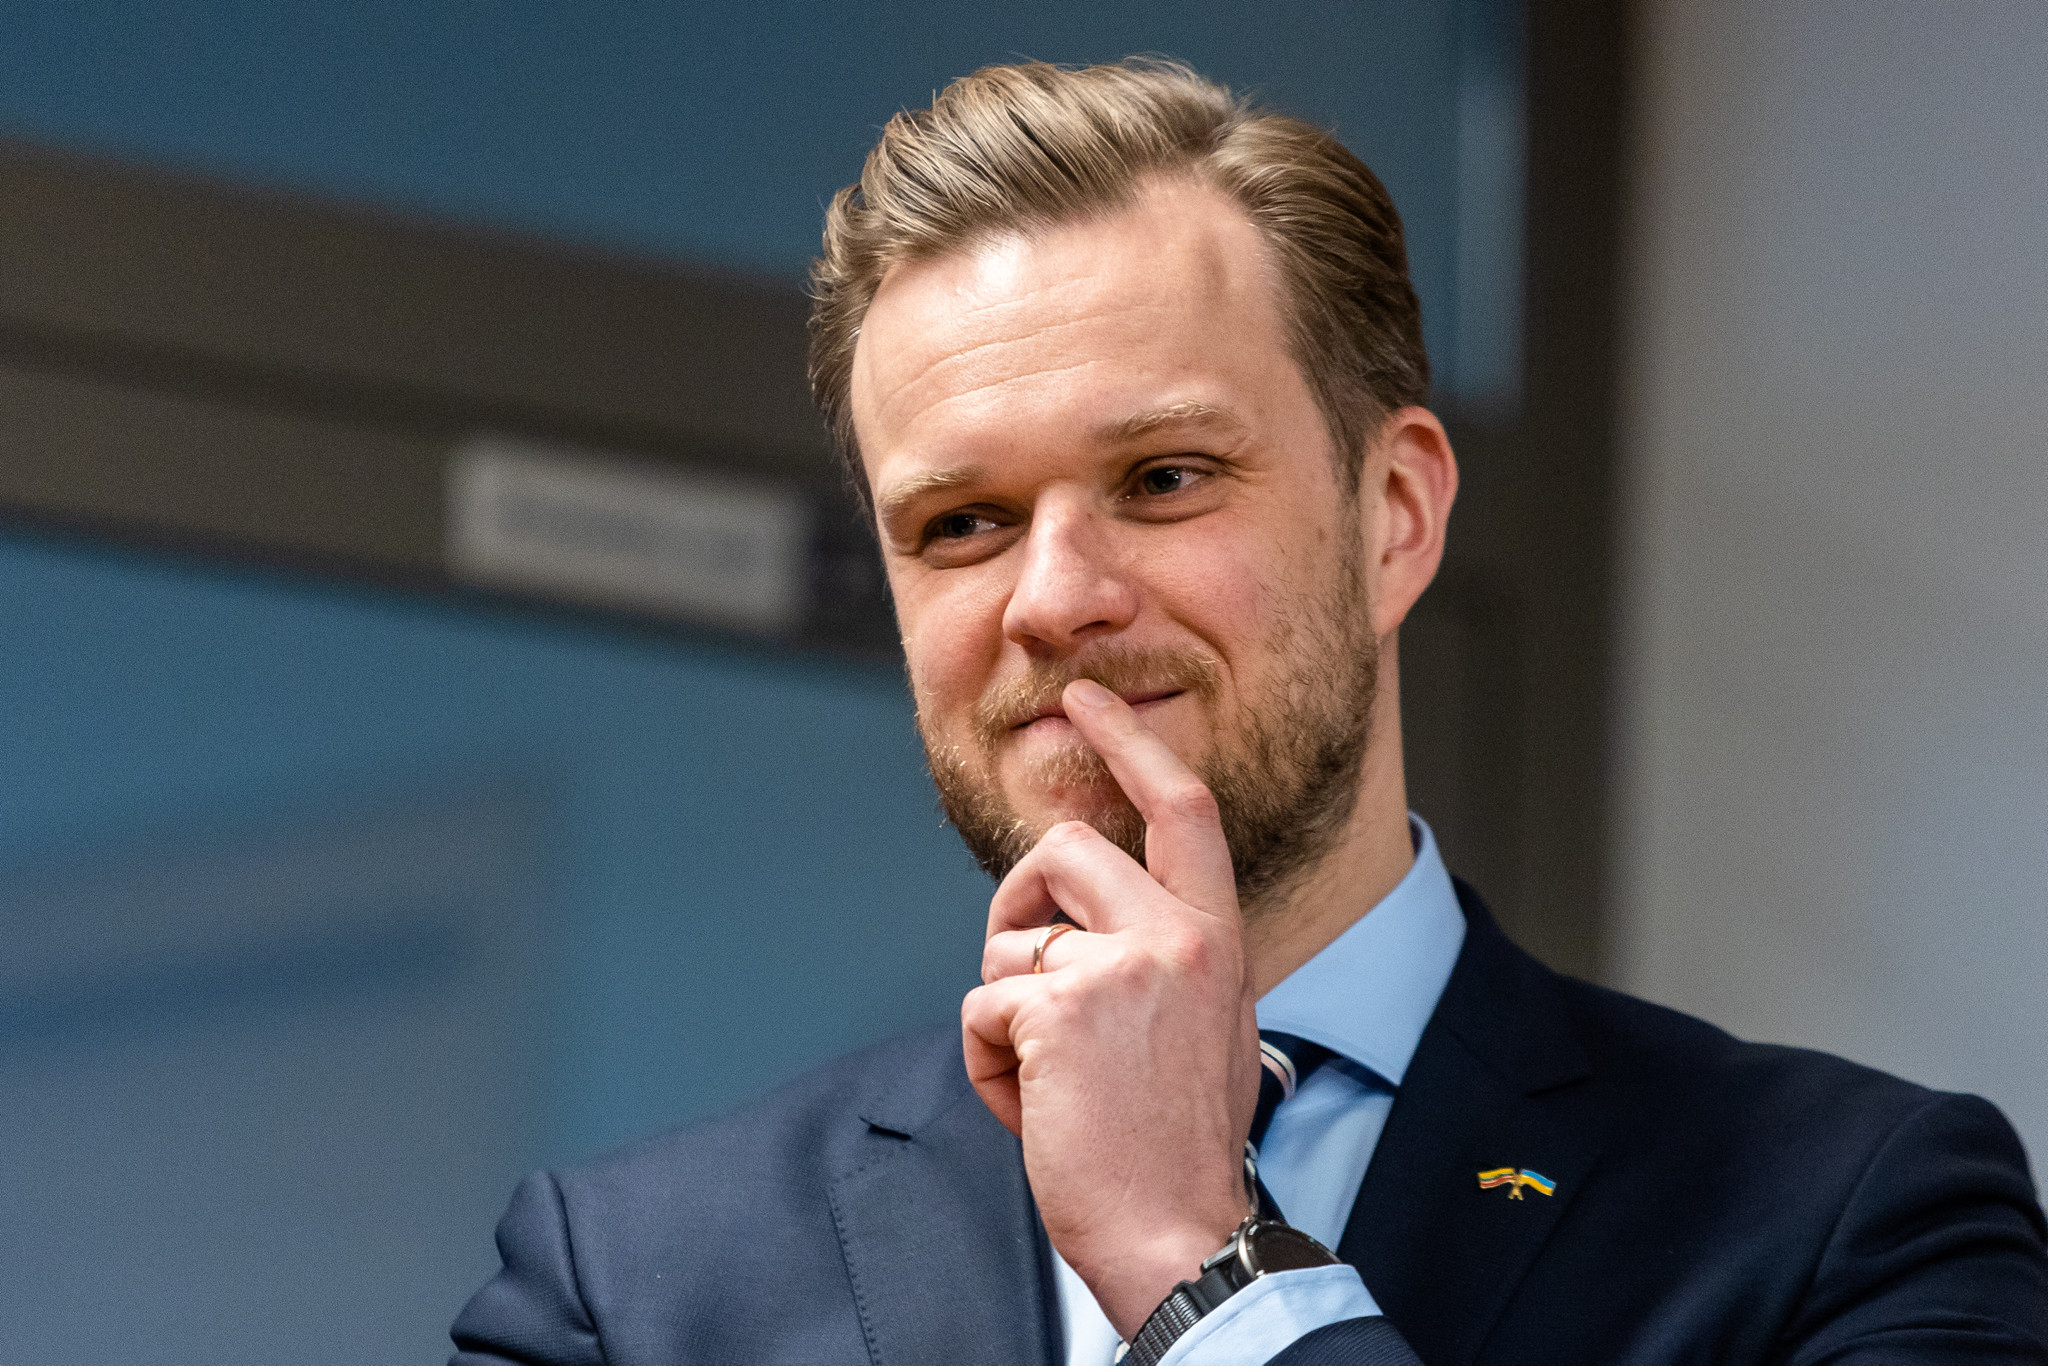 Landsberg: Finlands NATO-medlemskap ville radikalt endre situasjonen i regionen